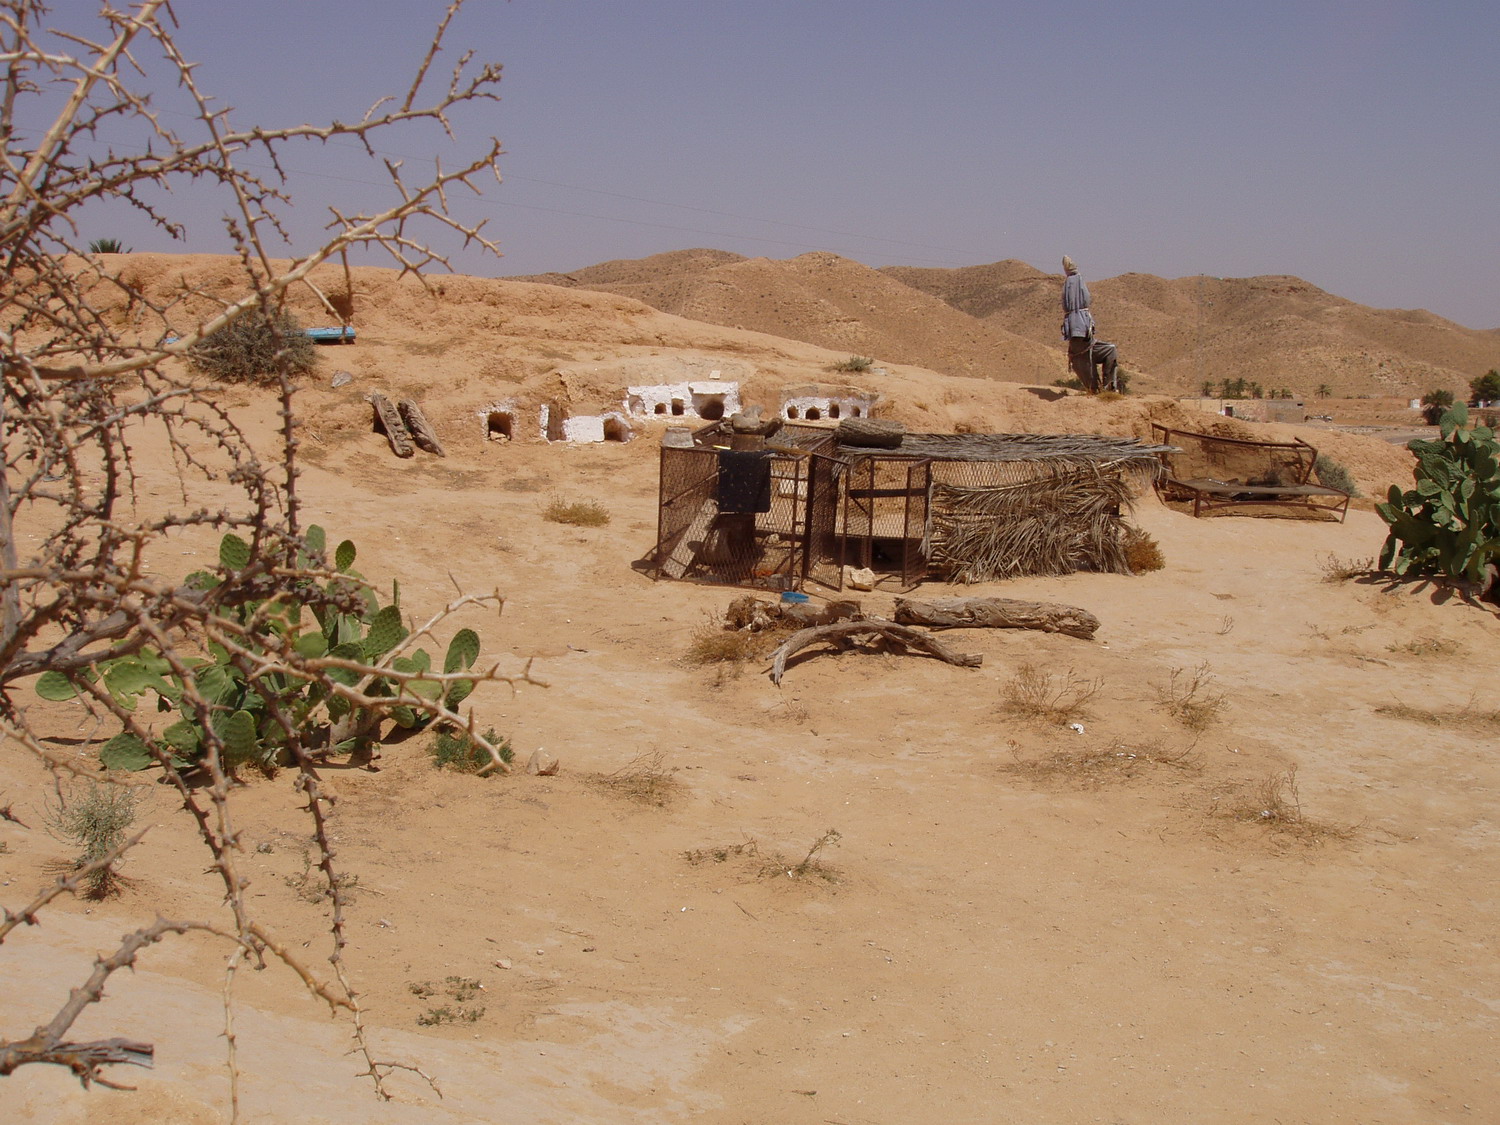 Жилье, вырытое в земле, спасает от летнего зноя (пустынные районы в Тунисе)